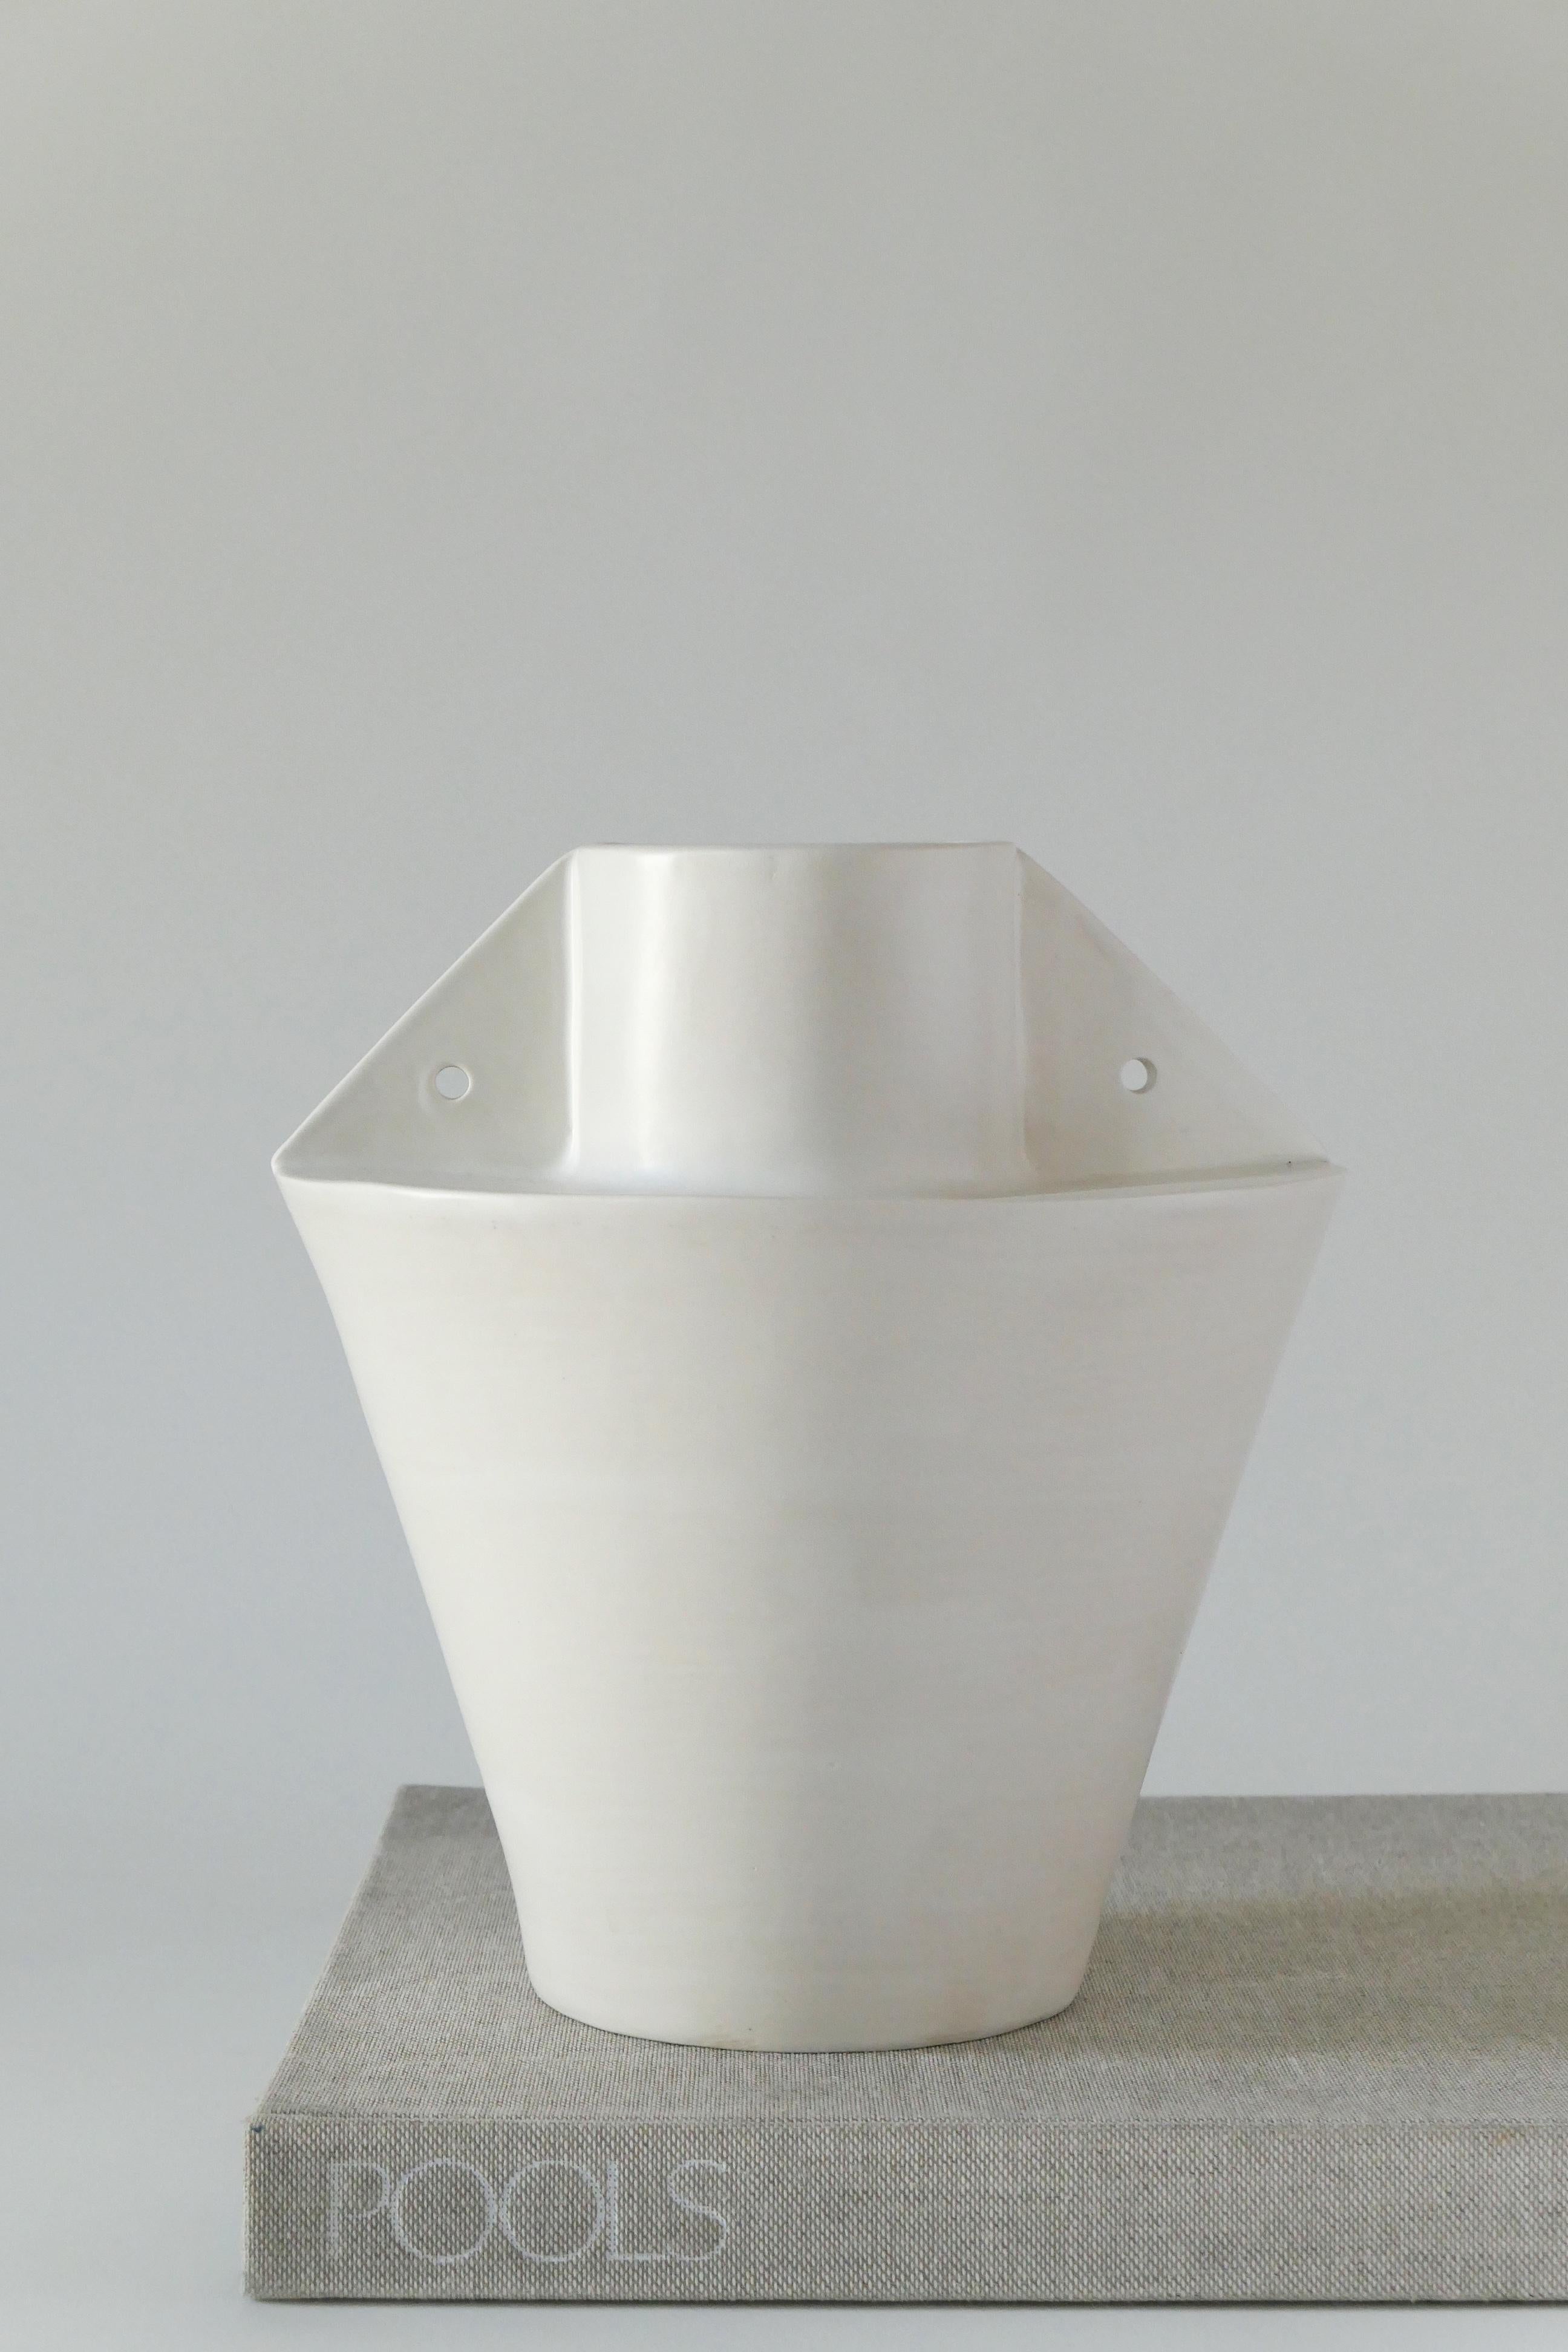 Vase en grès blanc, recouvert d'une douce glaçure blanche. Ce vase est fabriqué à la main à partir de plaques d'argile.

Karina Vieira est une céramiste basée à Brooklyn qui se consacre à la fabrication de récipients à la main. 

Son travail